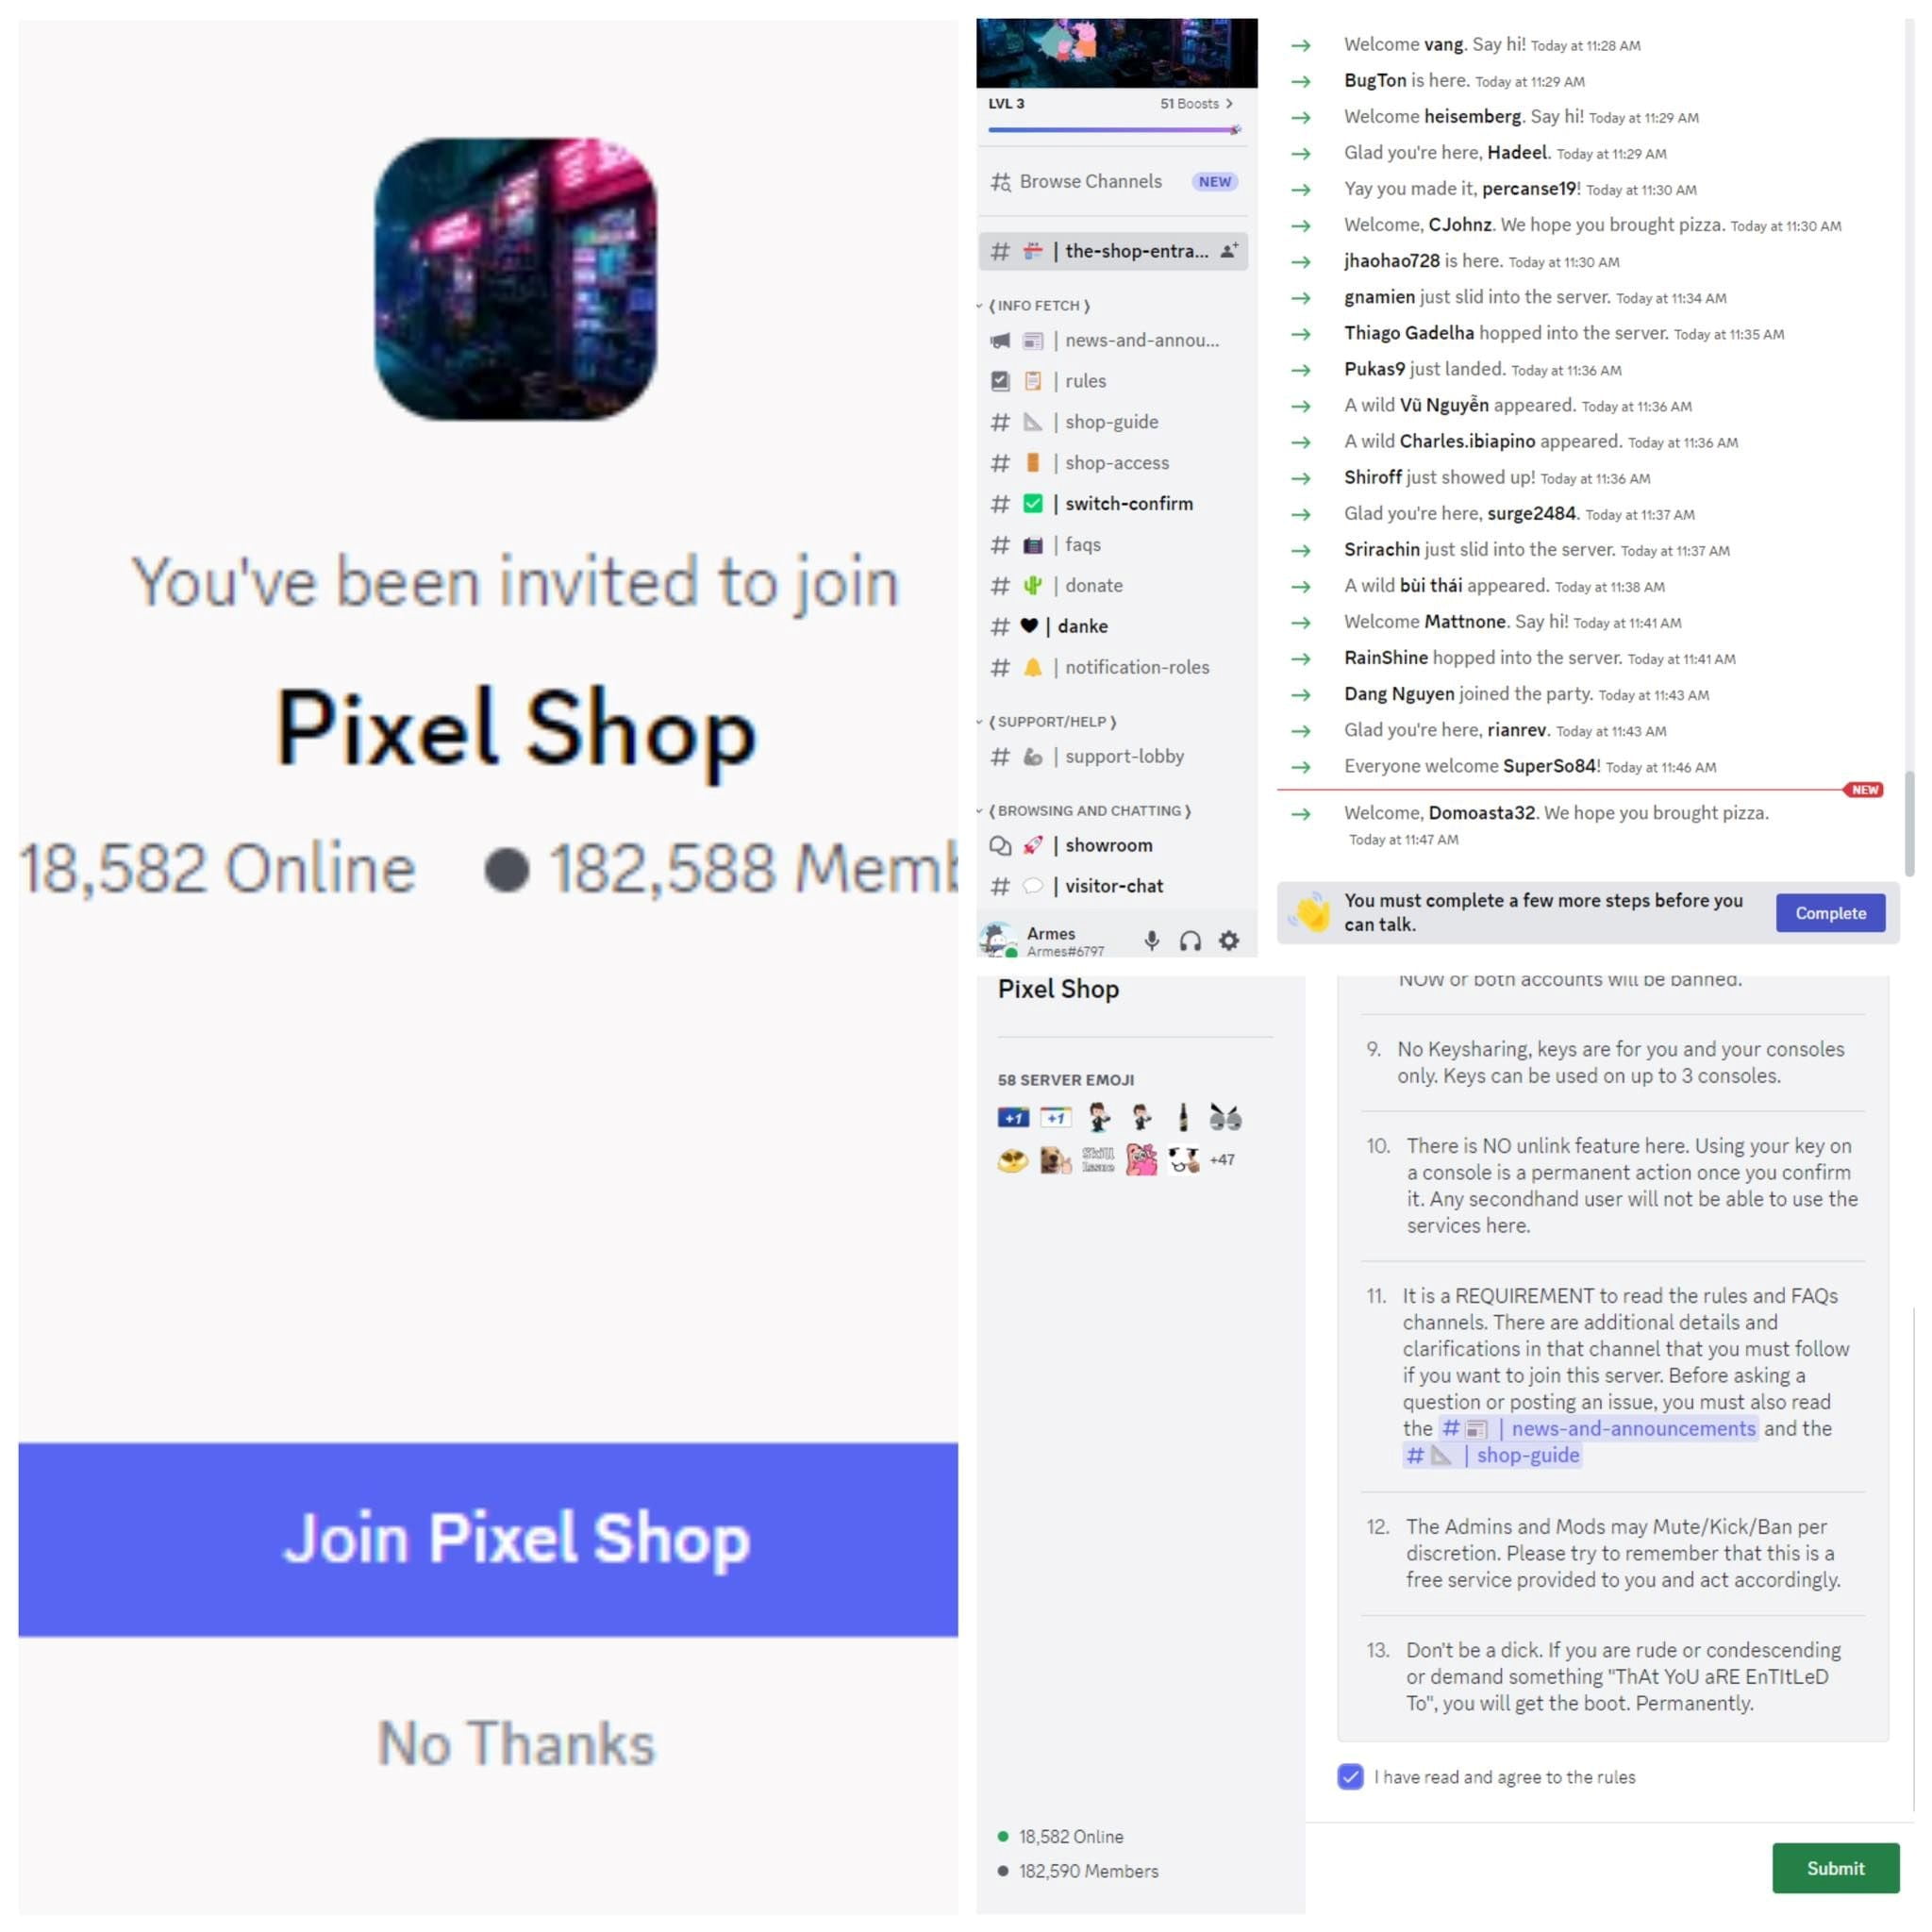 Tham gia server của Pixel Shop thông qua Discord